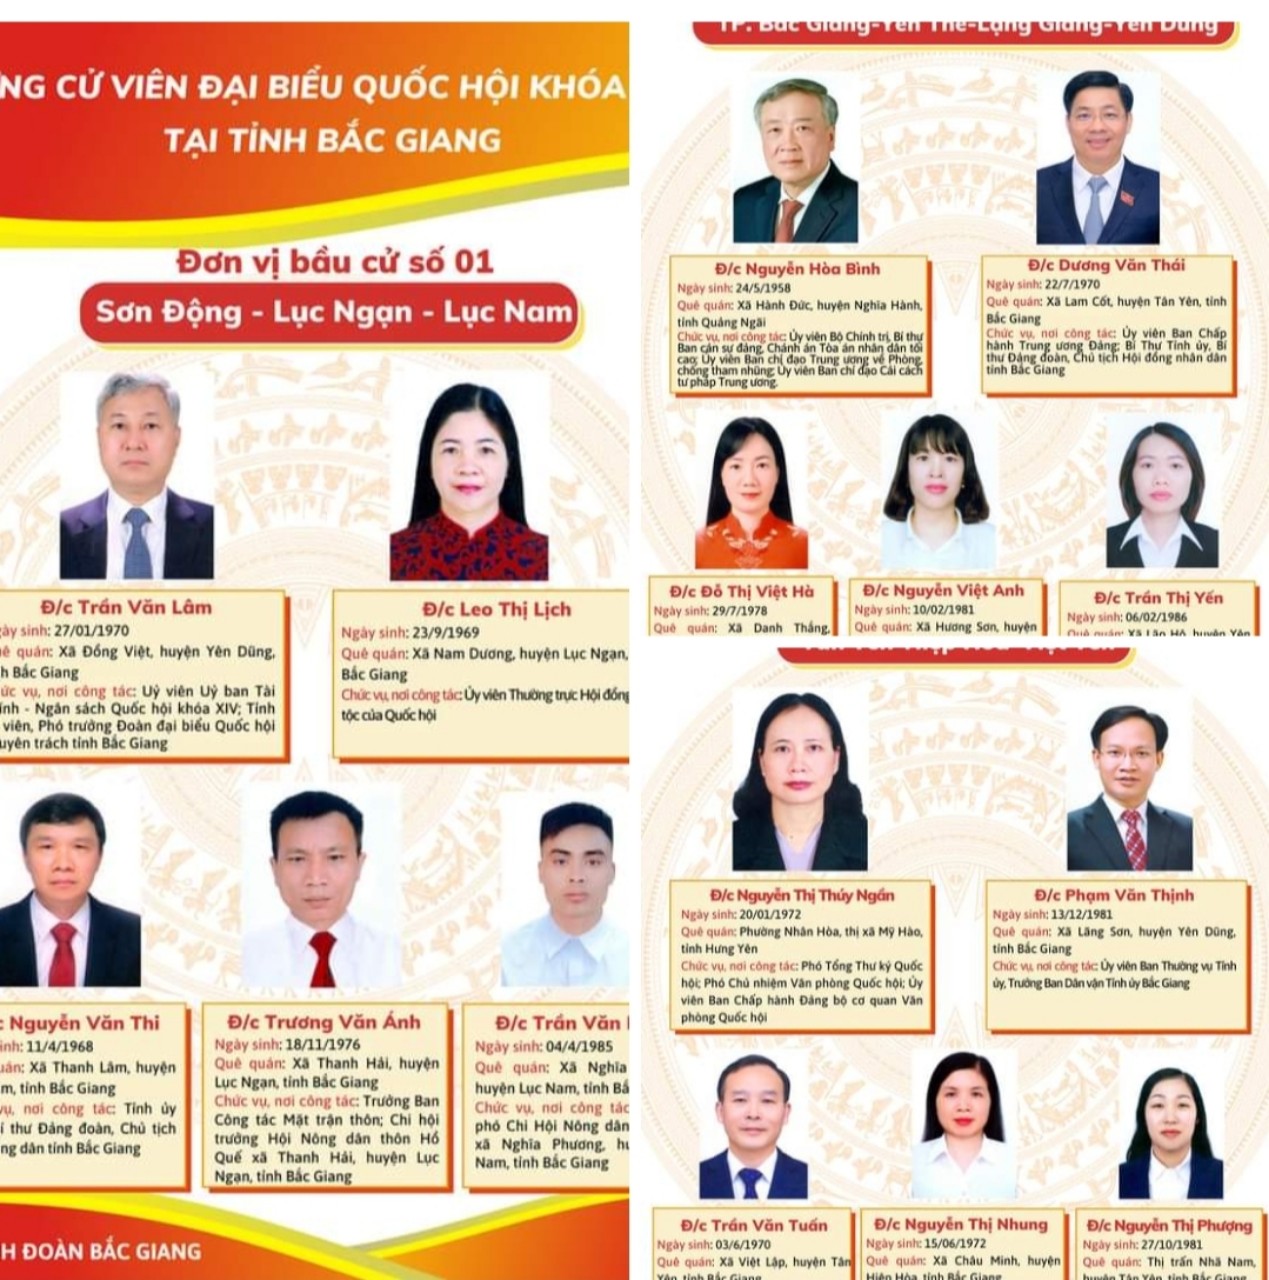 Tiểu sử tóm tắt của những người ứng cử ĐBQH khóa XV tại tỉnh Bắc Giang